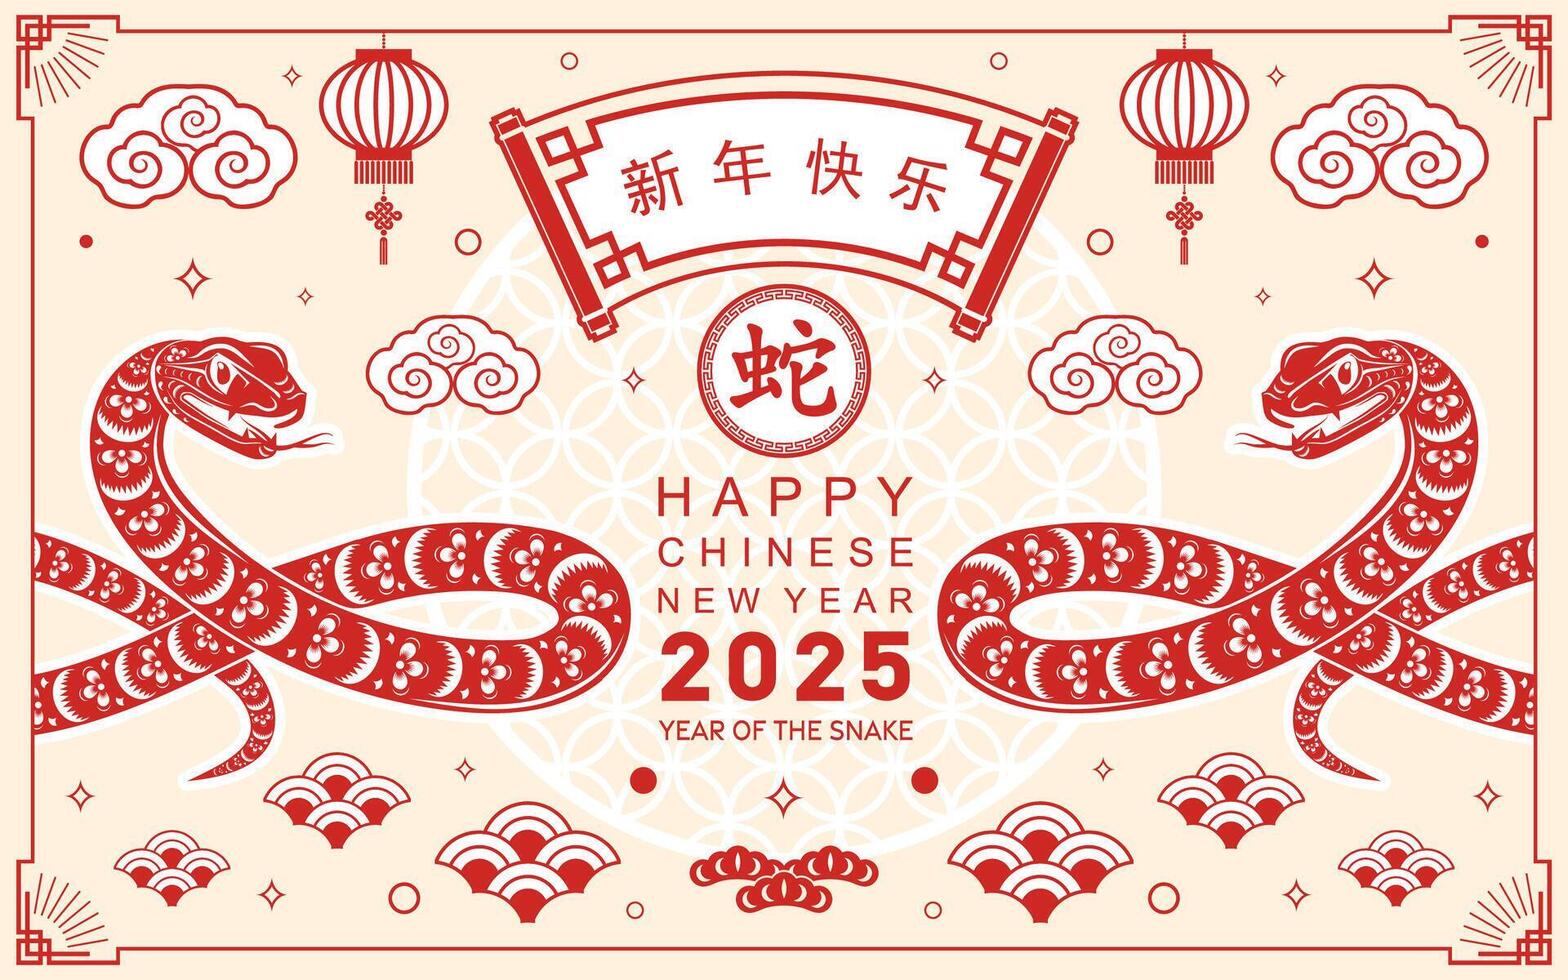 contento chino nuevo año 2025 año de el serpiente con flor linterna asiático elementos rojo y oro tradicional papel cortar estilo en color antecedentes. vector